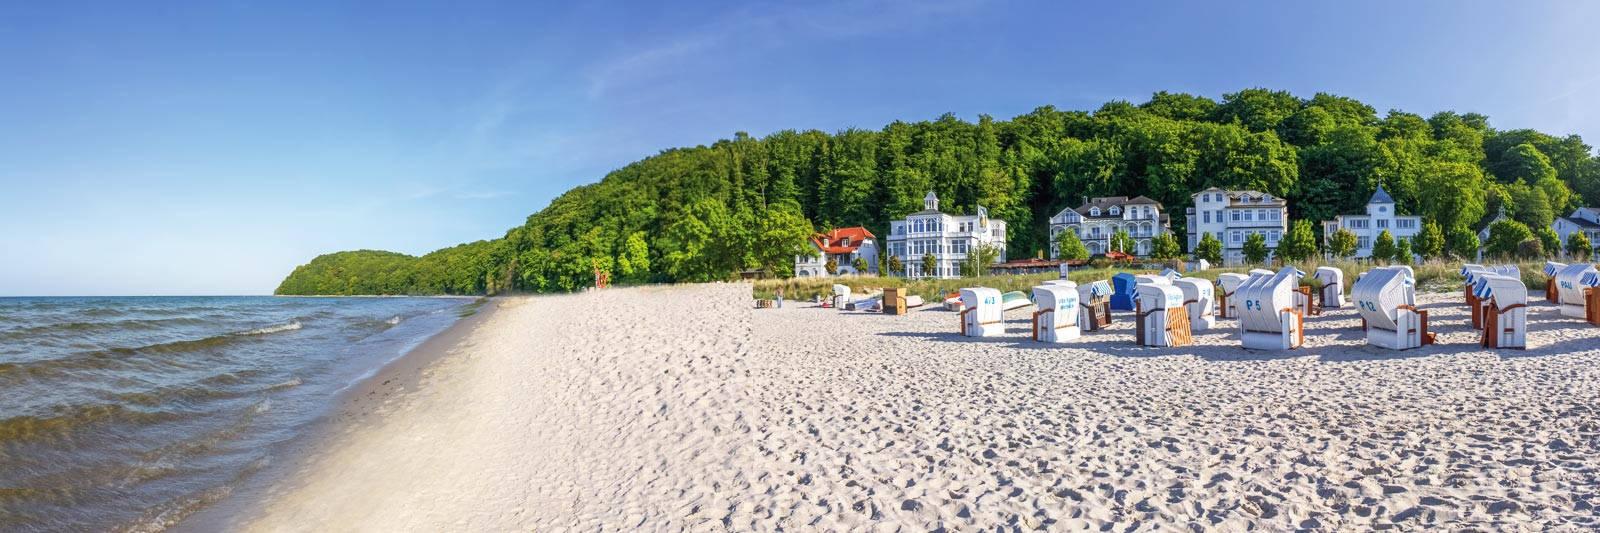 68.387 Ferienwohnungen und Ferienhäuser in Mecklenburg-Vorpommern - tourist-online.de